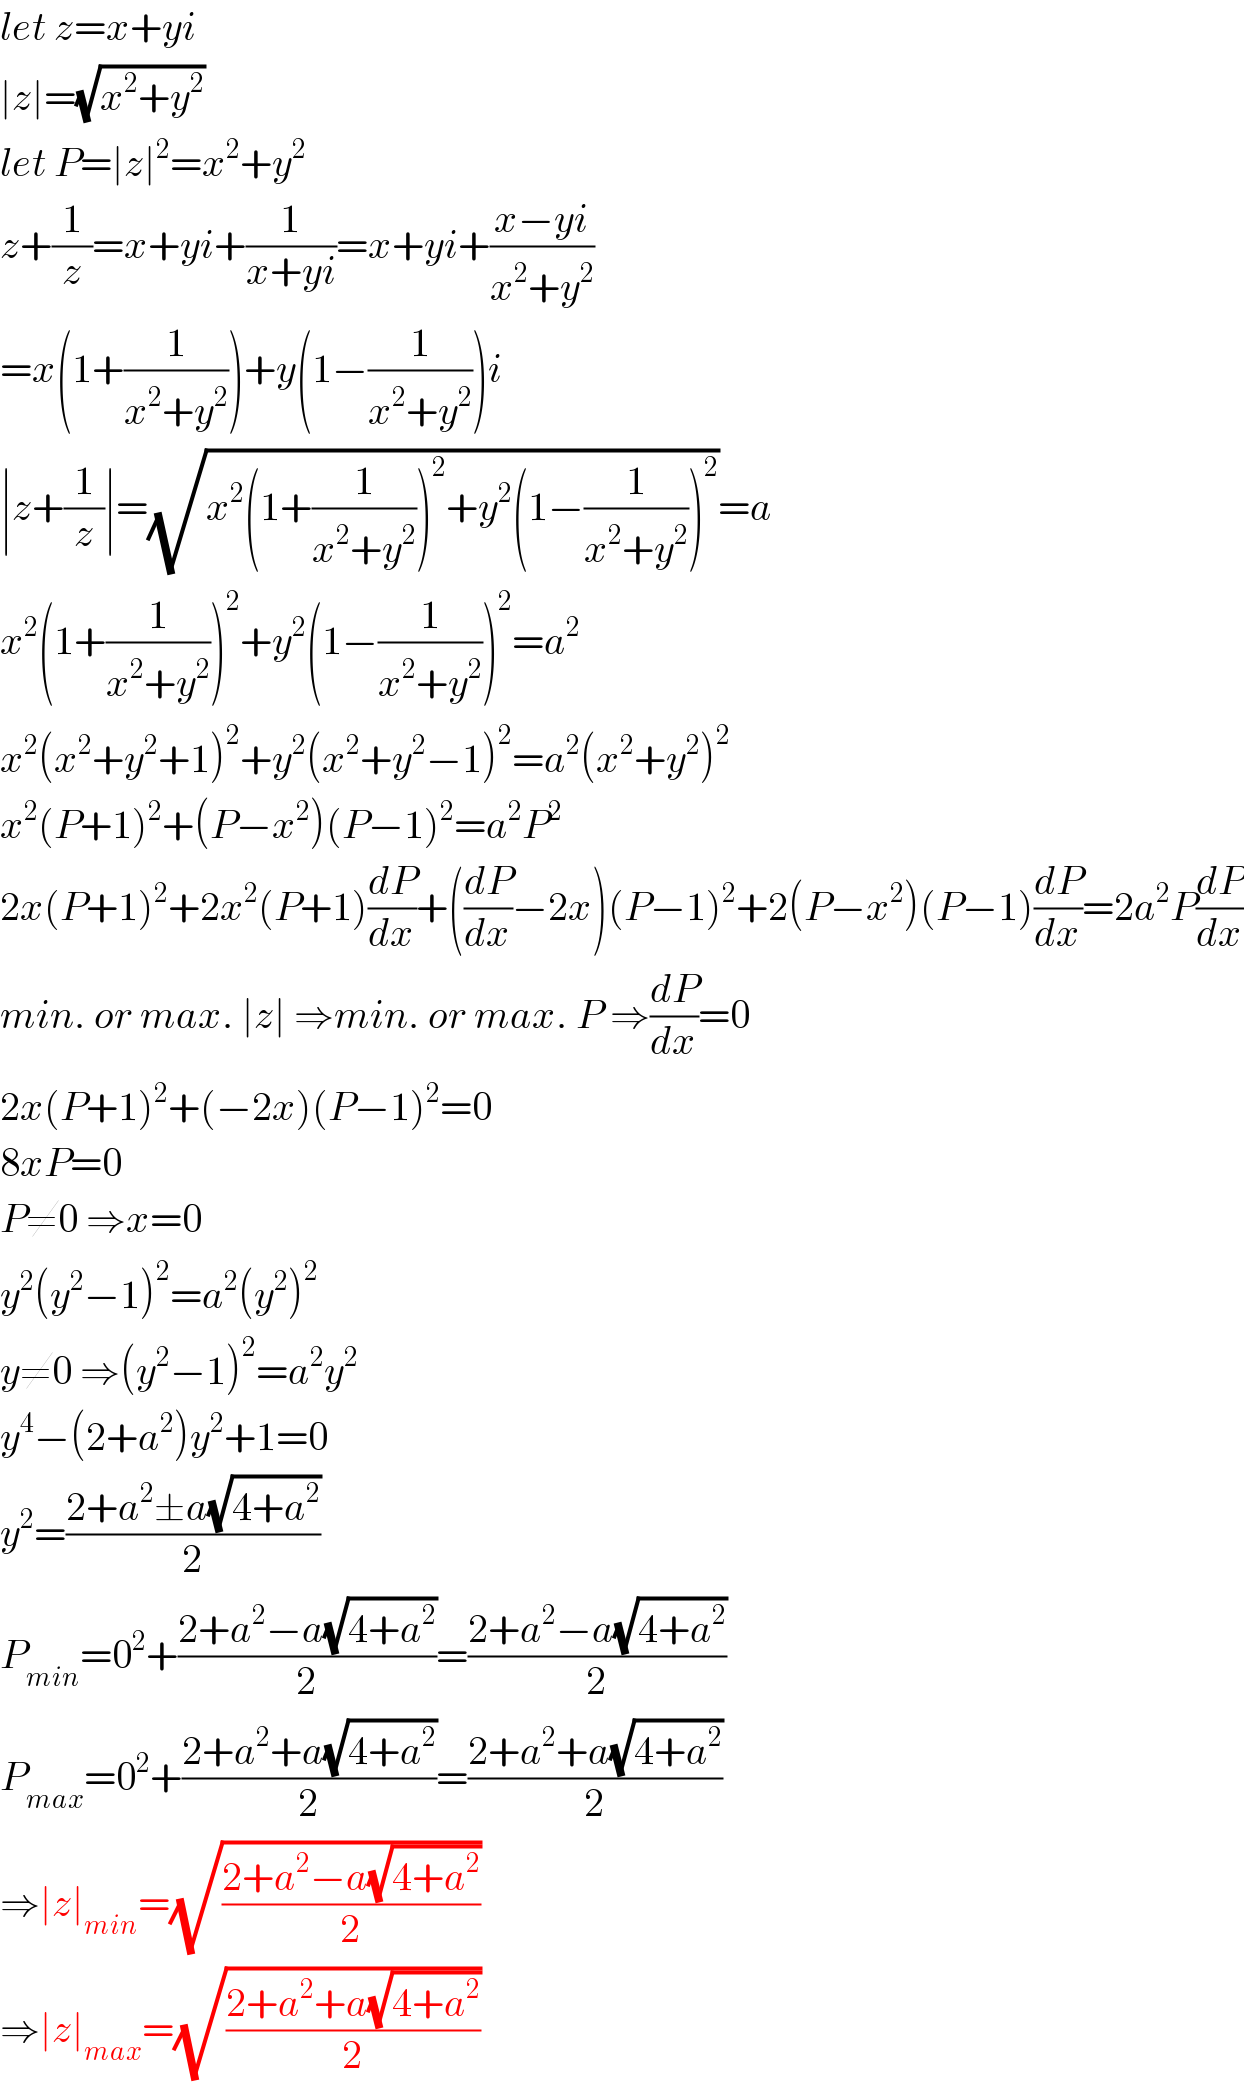 let z=x+yi  ∣z∣=(√(x^2 +y^2 ))  let P=∣z∣^2 =x^2 +y^2   z+(1/z)=x+yi+(1/(x+yi))=x+yi+((x−yi)/(x^2 +y^2 ))  =x(1+(1/(x^2 +y^2 )))+y(1−(1/(x^2 +y^2 )))i  ∣z+(1/z)∣=(√(x^2 (1+(1/(x^2 +y^2 )))^2 +y^2 (1−(1/(x^2 +y^2 )))^2 ))=a  x^2 (1+(1/(x^2 +y^2 )))^2 +y^2 (1−(1/(x^2 +y^2 )))^2 =a^2   x^2 (x^2 +y^2 +1)^2 +y^2 (x^2 +y^2 −1)^2 =a^2 (x^2 +y^2 )^2   x^2 (P+1)^2 +(P−x^2 )(P−1)^2 =a^2 P^2   2x(P+1)^2 +2x^2 (P+1)(dP/dx)+((dP/dx)−2x)(P−1)^2 +2(P−x^2 )(P−1)(dP/dx)=2a^2 P(dP/dx)  min. or max. ∣z∣ ⇒min. or max. P ⇒(dP/dx)=0  2x(P+1)^2 +(−2x)(P−1)^2 =0  8xP=0  P≠0 ⇒x=0  y^2 (y^2 −1)^2 =a^2 (y^2 )^2   y≠0 ⇒(y^2 −1)^2 =a^2 y^2   y^4 −(2+a^2 )y^2 +1=0  y^2 =((2+a^2 ±a(√(4+a^2 )))/2)  P_(min) =0^2 +((2+a^2 −a(√(4+a^2 )))/2)=((2+a^2 −a(√(4+a^2 )))/2)  P_(max) =0^2 +((2+a^2 +a(√(4+a^2 )))/2)=((2+a^2 +a(√(4+a^2 )))/2)  ⇒∣z∣_(min) =(√((2+a^2 −a(√(4+a^2 )))/2))  ⇒∣z∣_(max) =(√((2+a^2 +a(√(4+a^2 )))/2))  